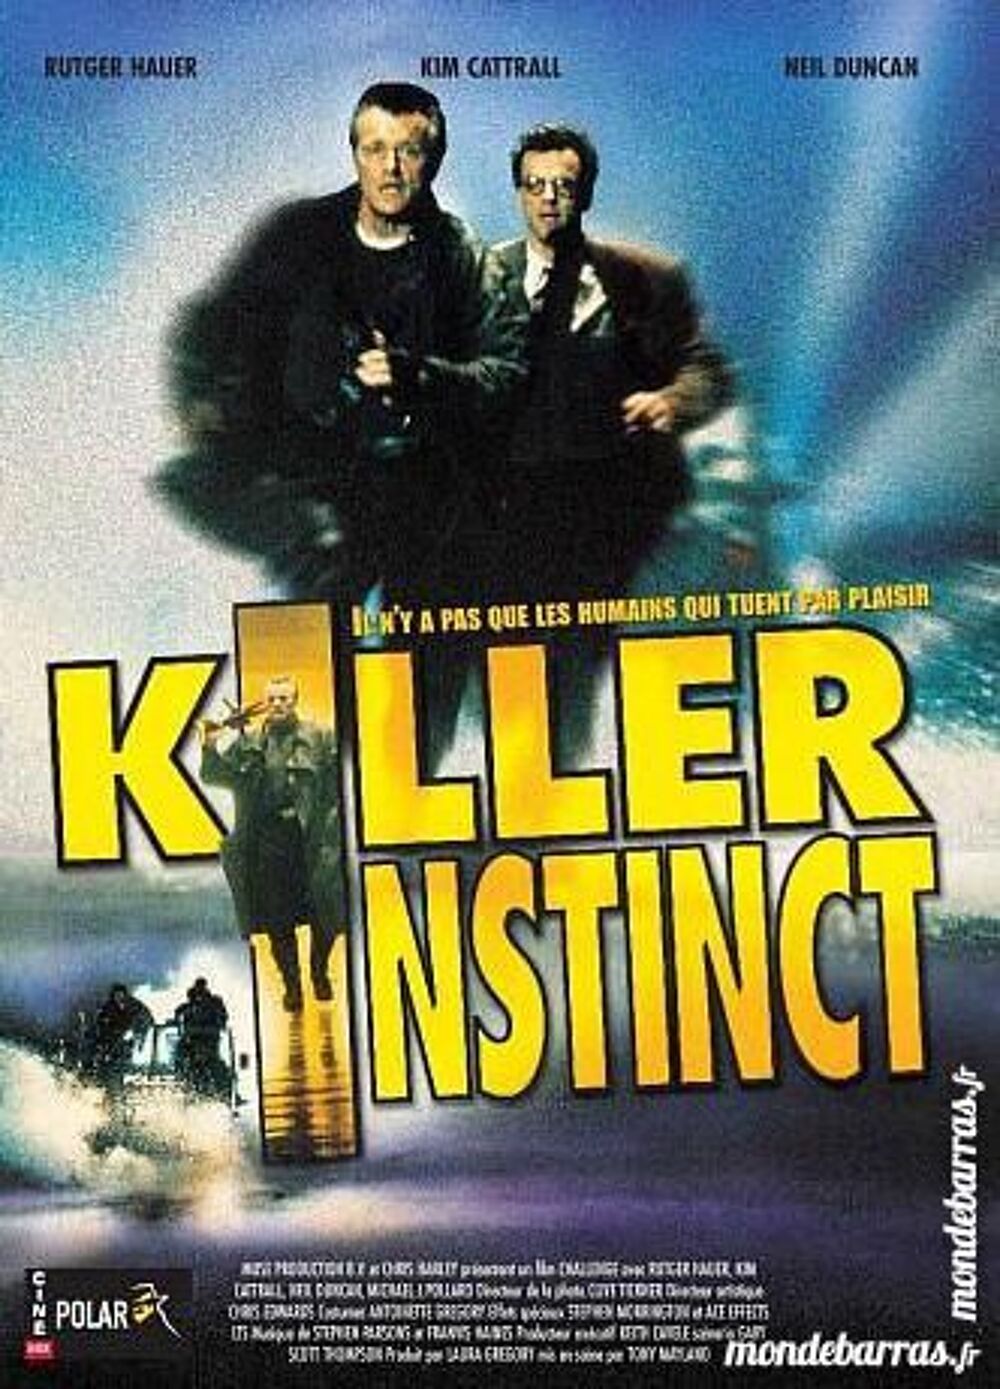 K7 vhs: Killer Instinct (477) DVD et blu-ray